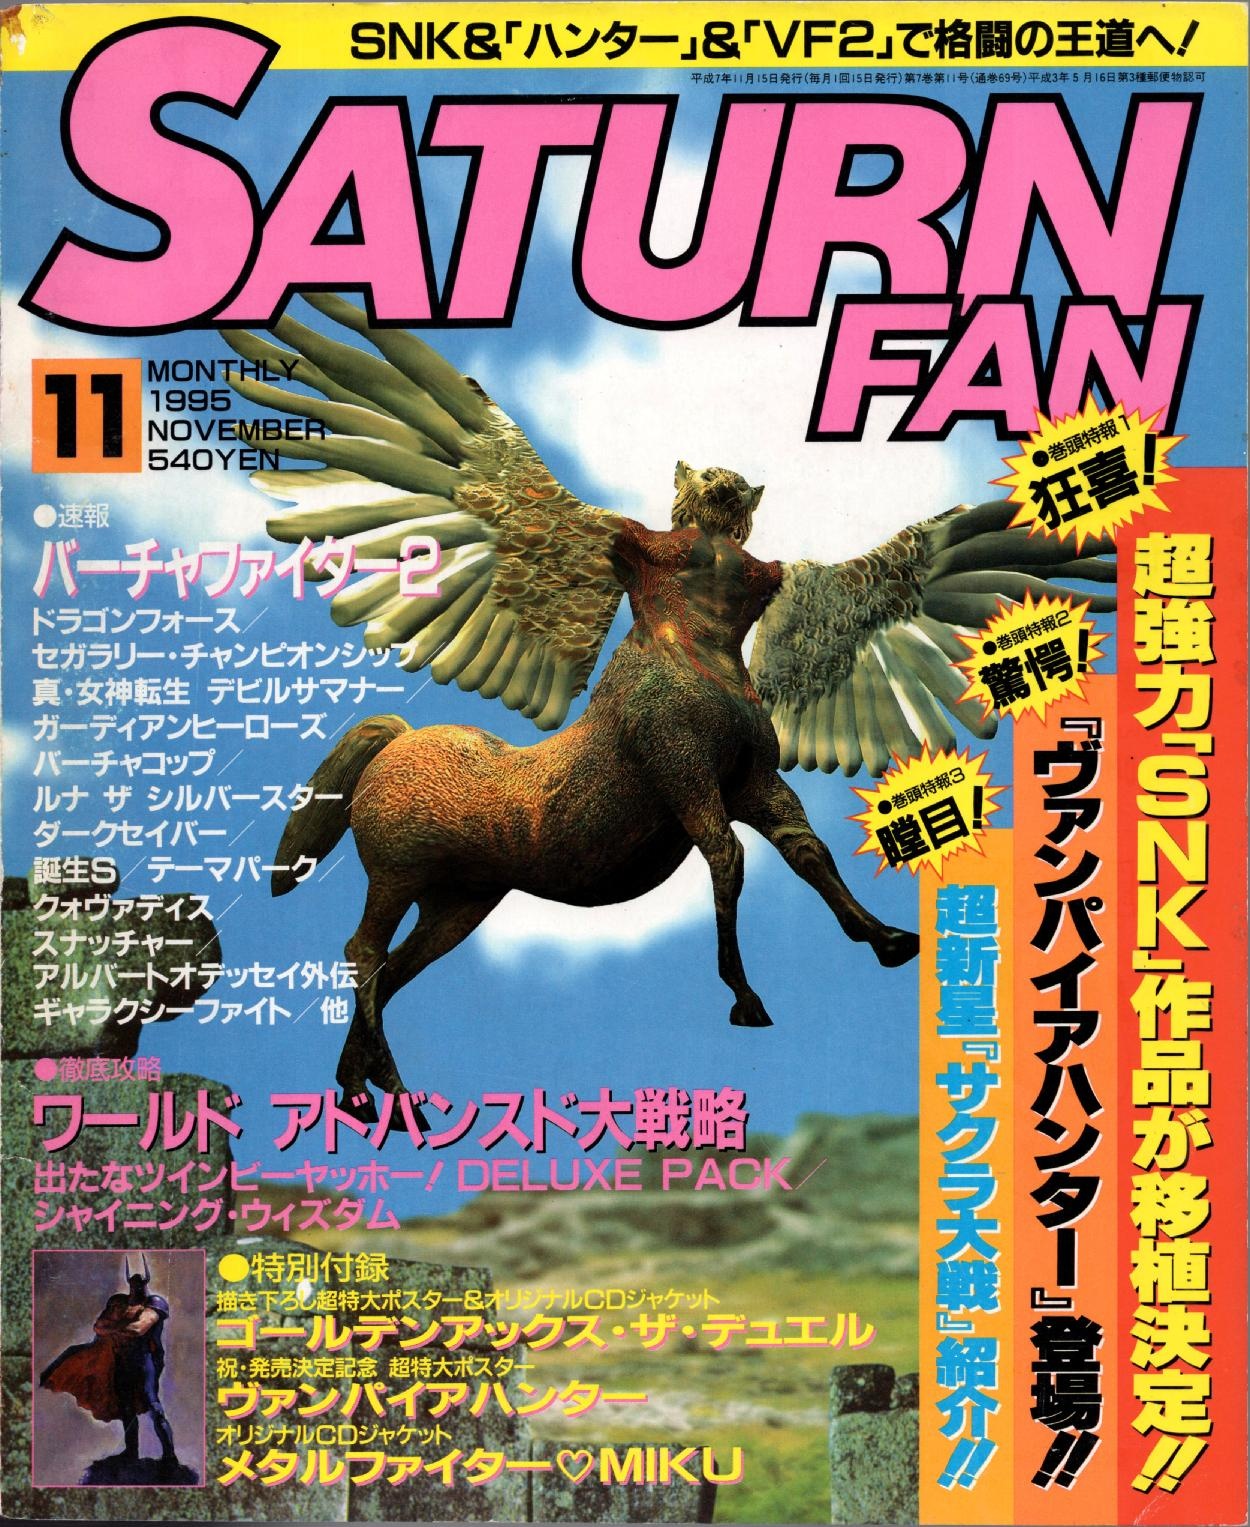 SaturnFan JP 1995-11 19951115.pdf